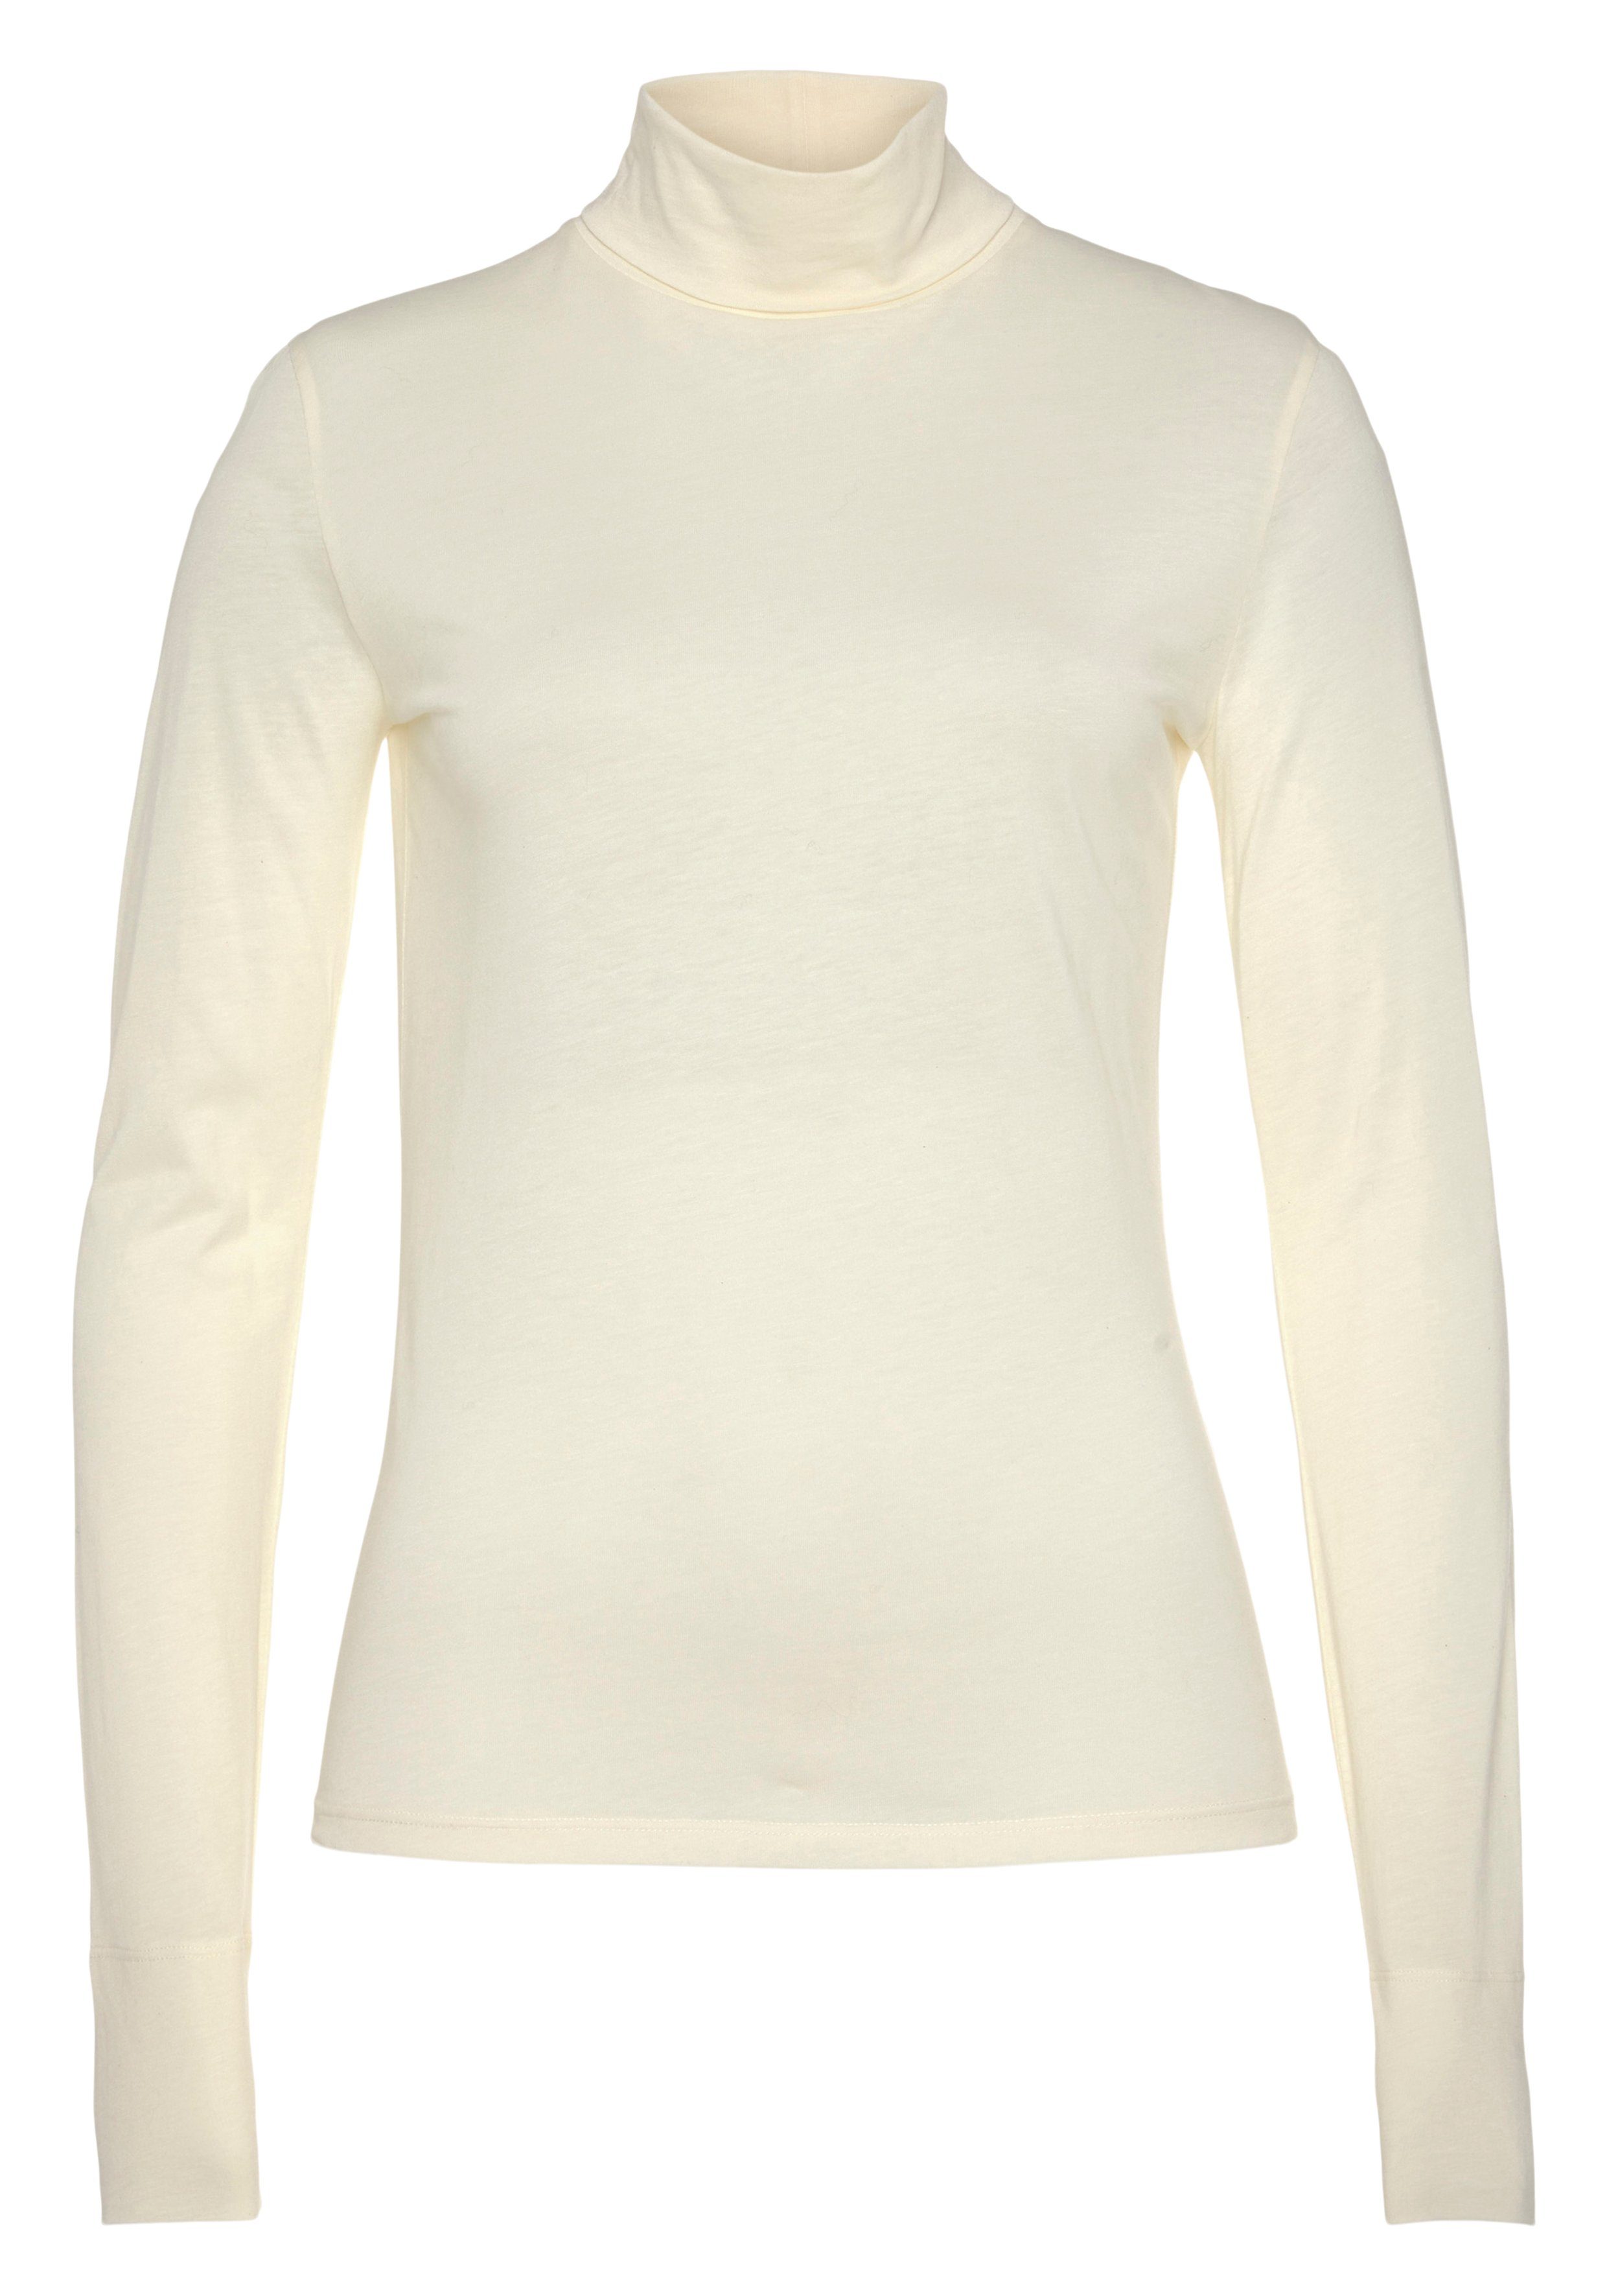 Stehkragen, C_Emerie_2 Langarmshirt Premium hochwertige Basic, White Open BOSS Rolli ORANGE atmungsaktive Qualität,